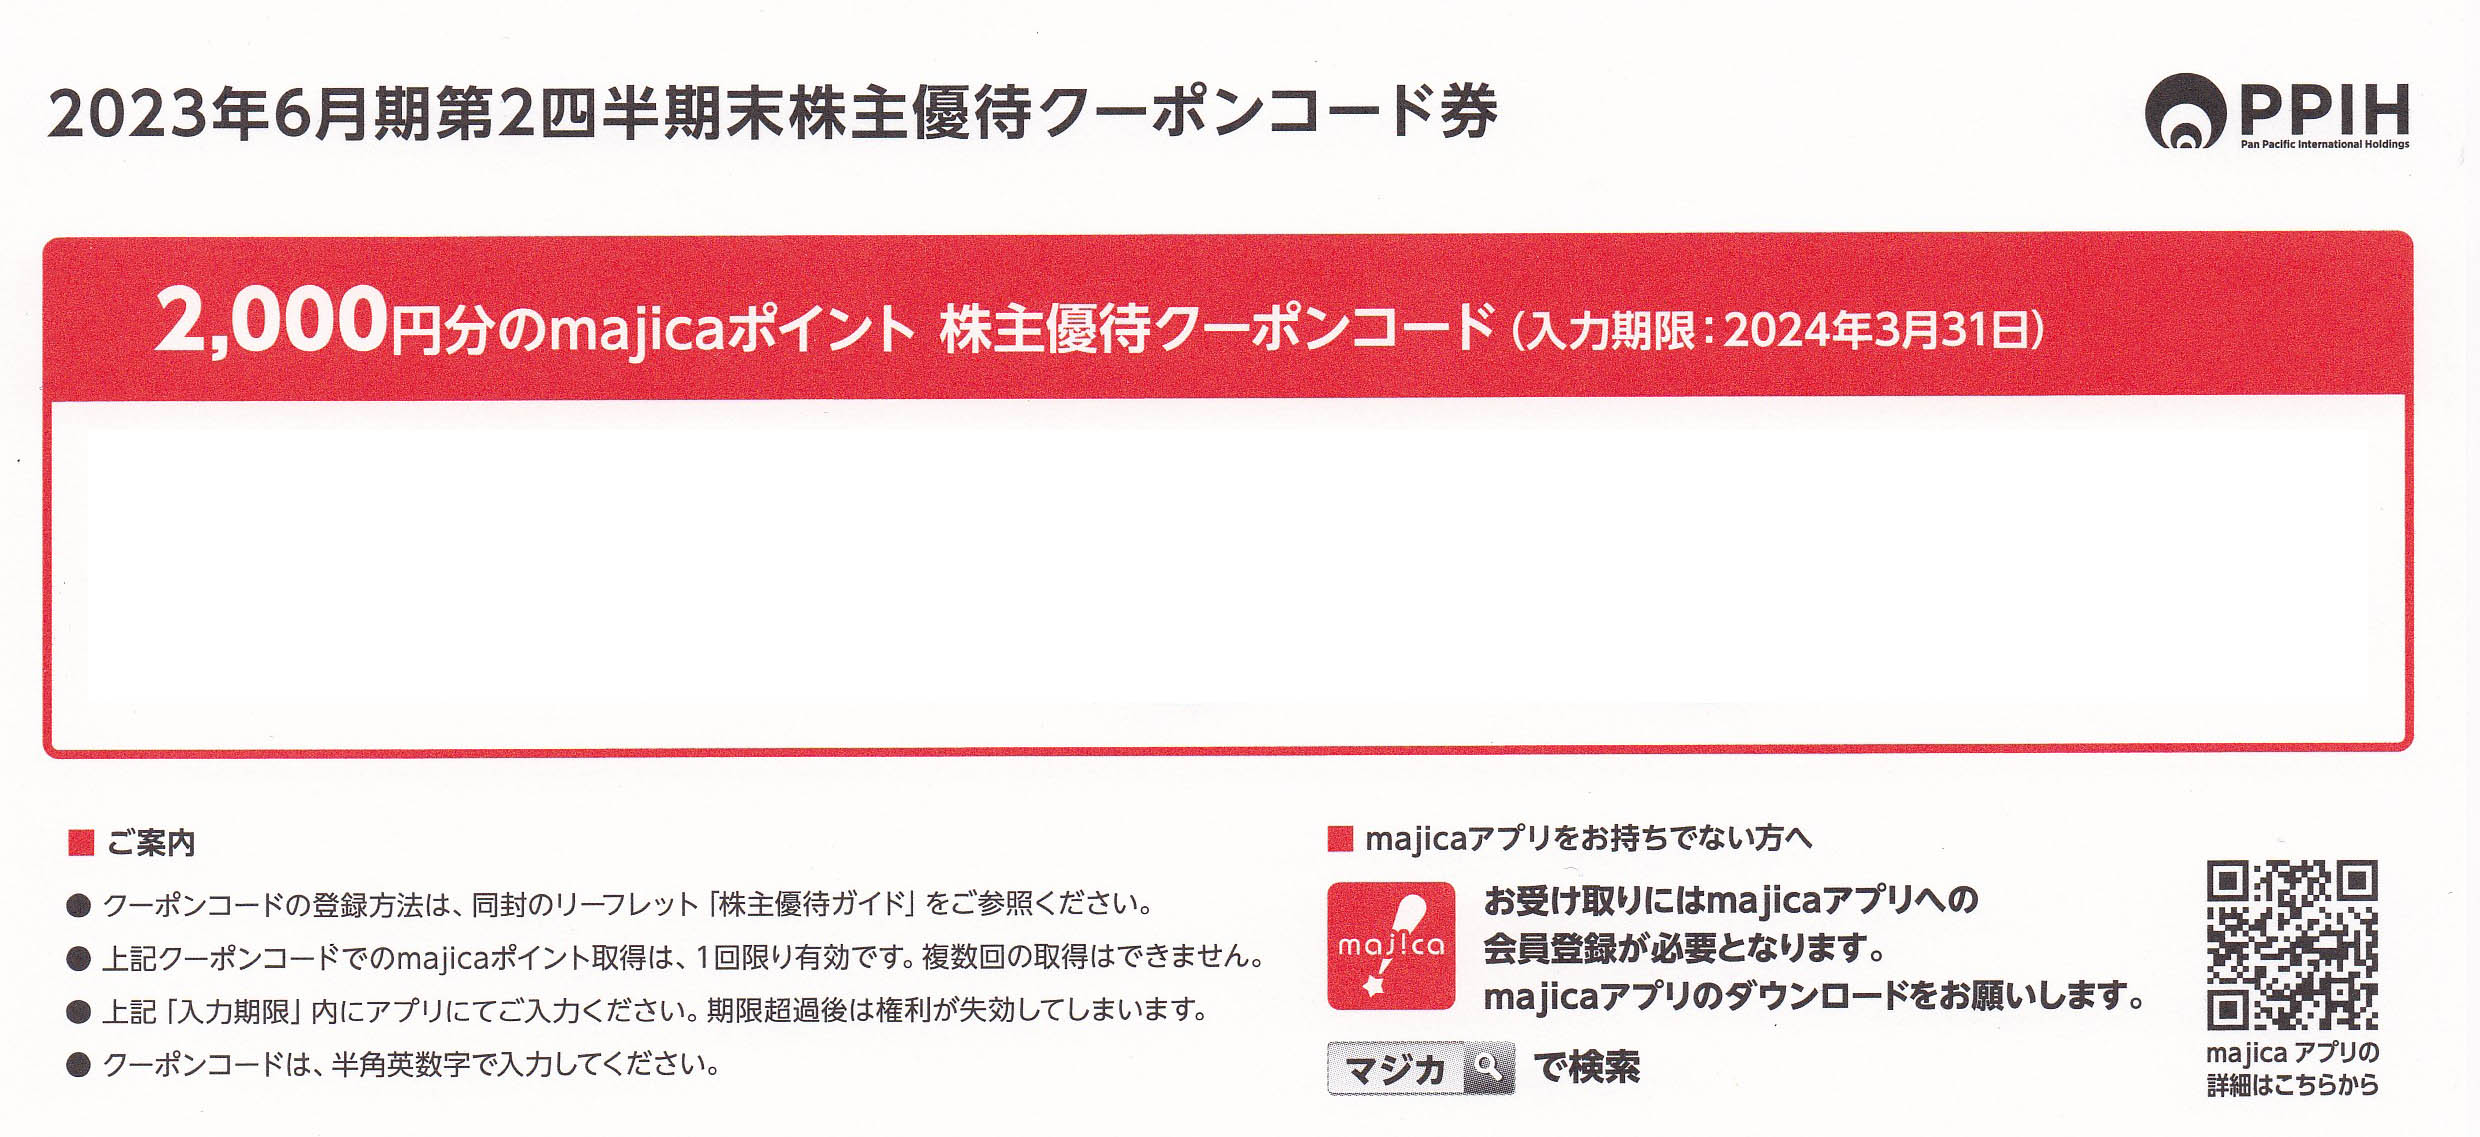 majica2000ポイント(パン・パシフィック株主優待クーポンコード)(2024.3.31)(番号メール連絡・現物発送なし)